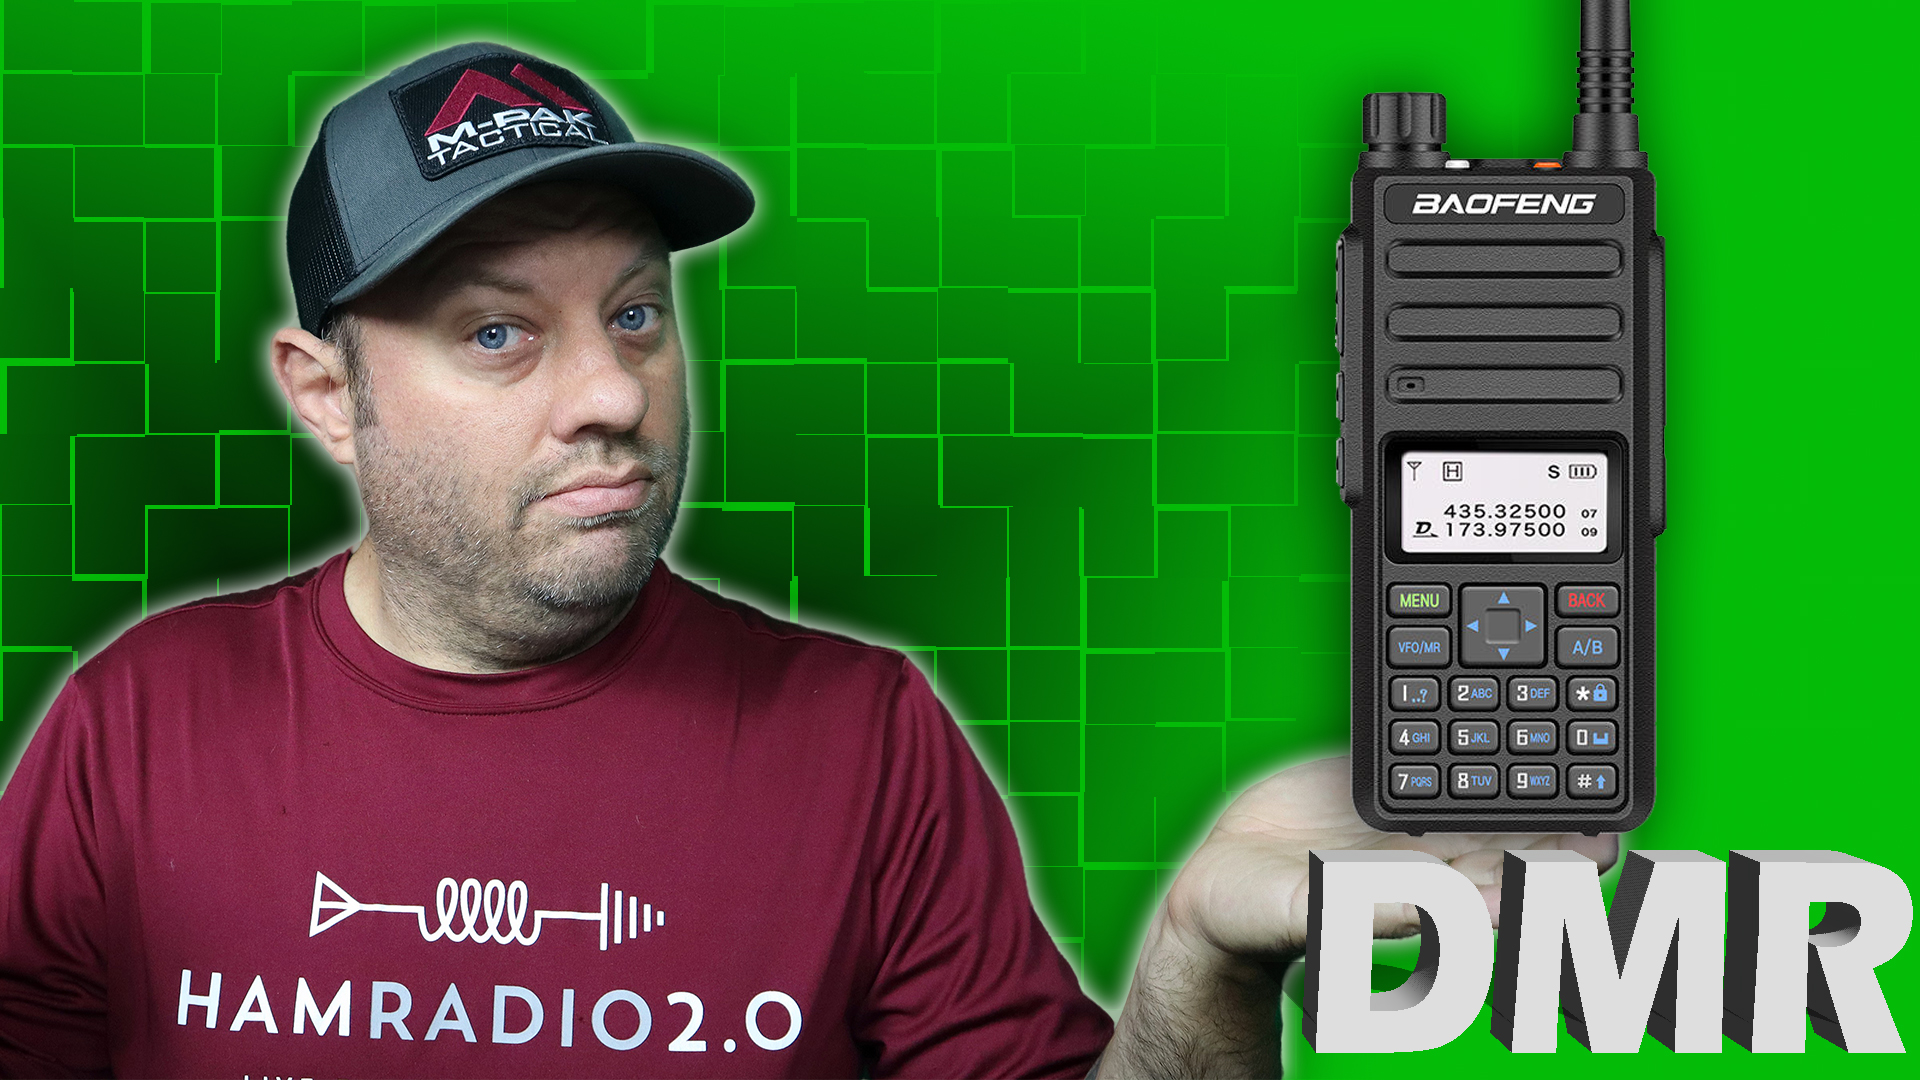 Episode 398: Baofeng DM-1801 Dual Band DMR HT for Ham Radio